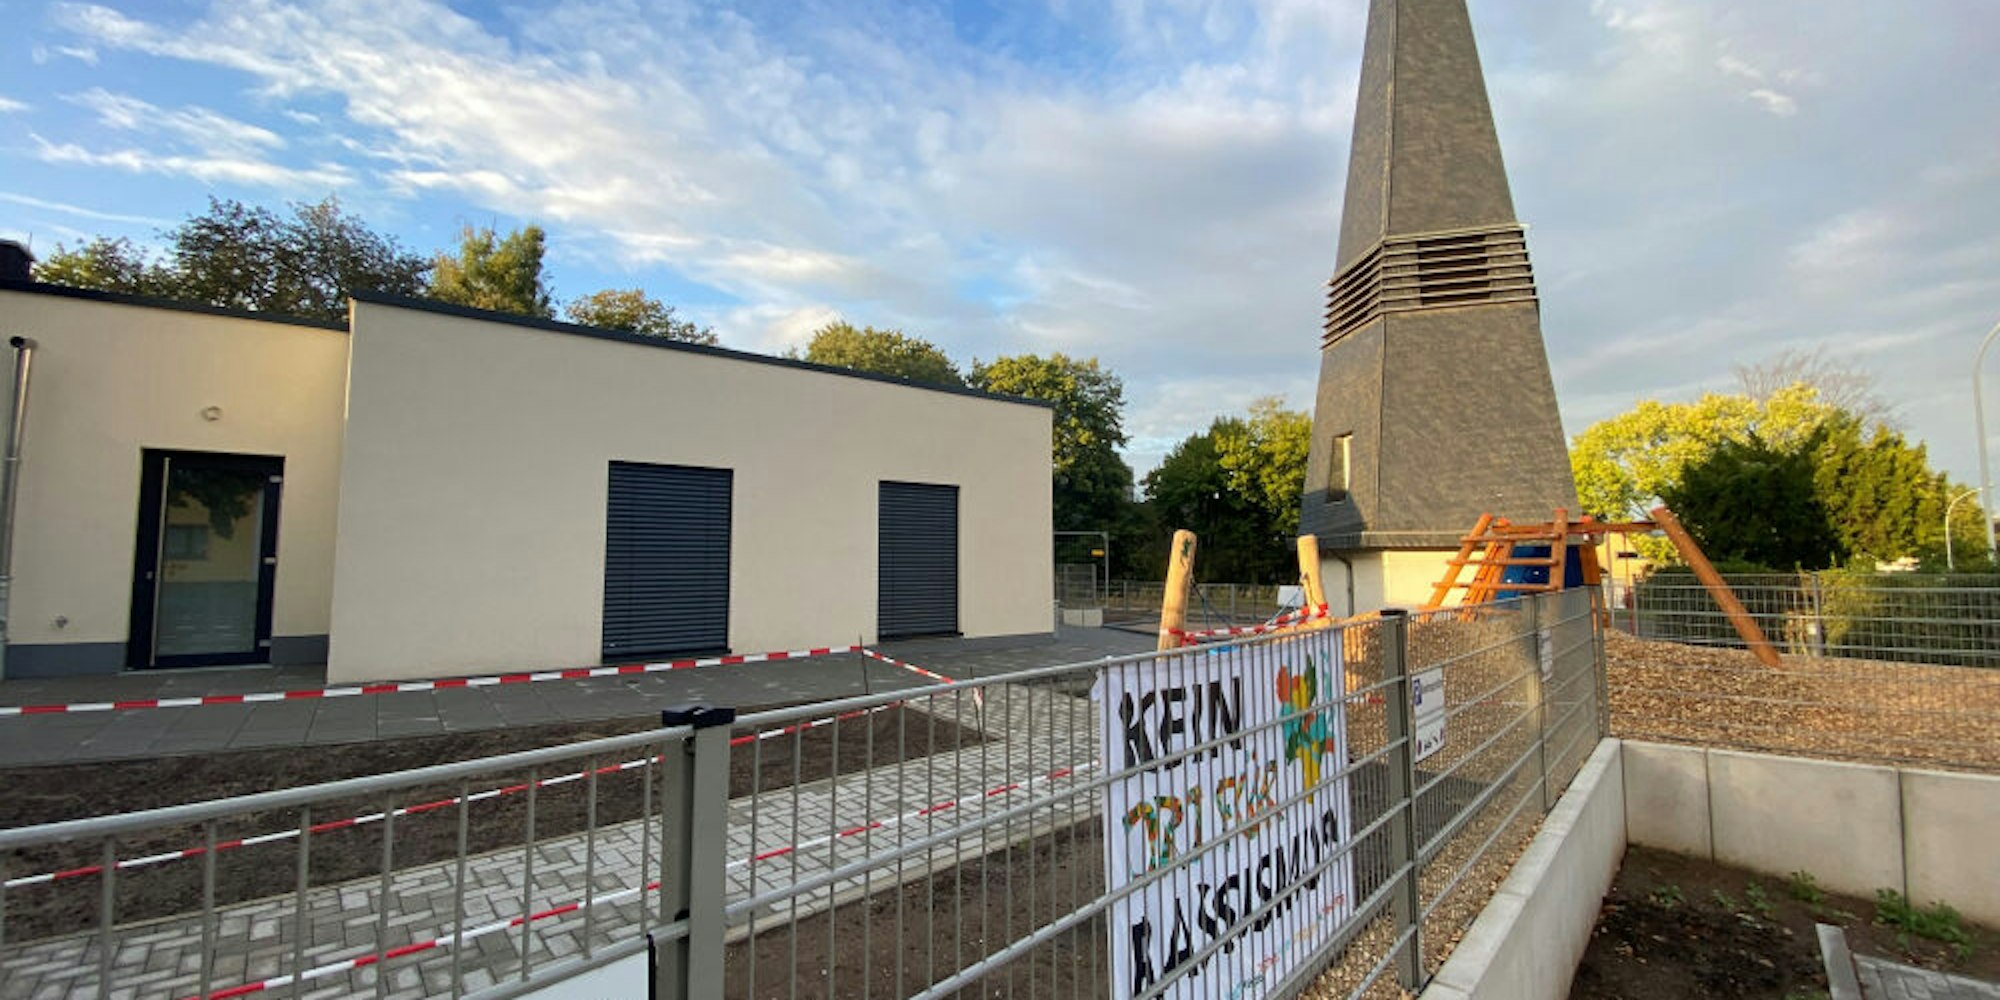 Die evangelische Kita Rodderweg wurde um eine weiteres Gebäude ergänzt. An dessen Platz stand von 1975 bis zum Abbruch im vergangenen Jahr die Johanneskirche, deren Turm erhalten blieb.